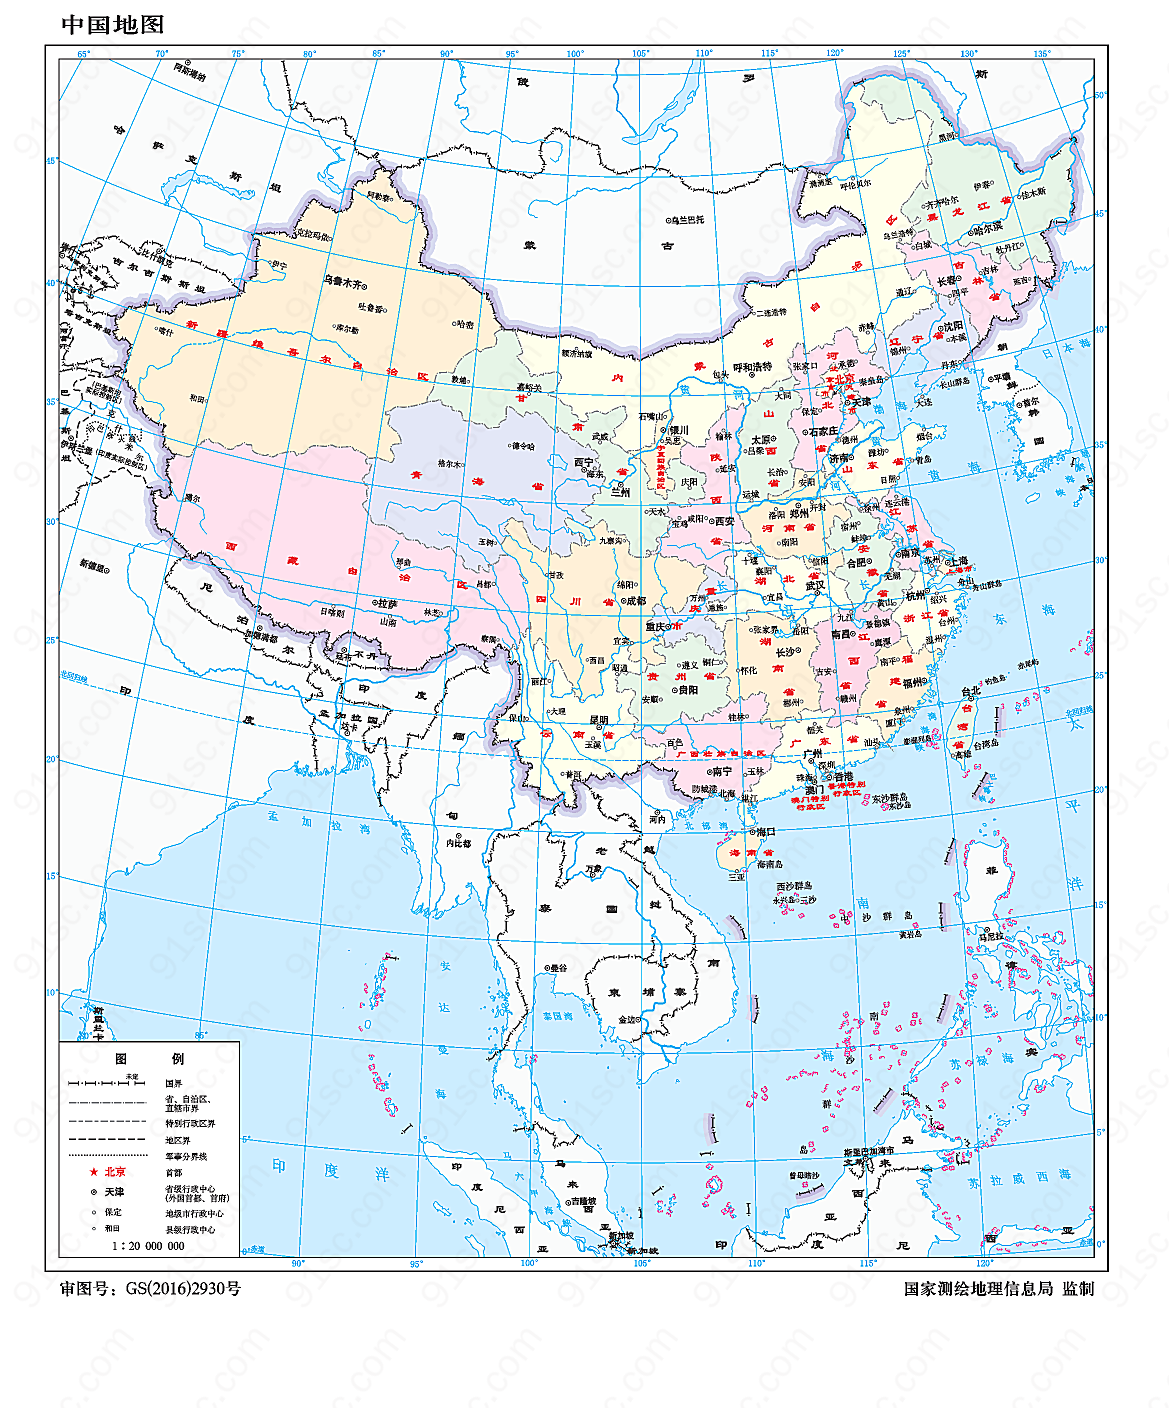 中国地图1:2000万8开分省设色有邻国装饰图案